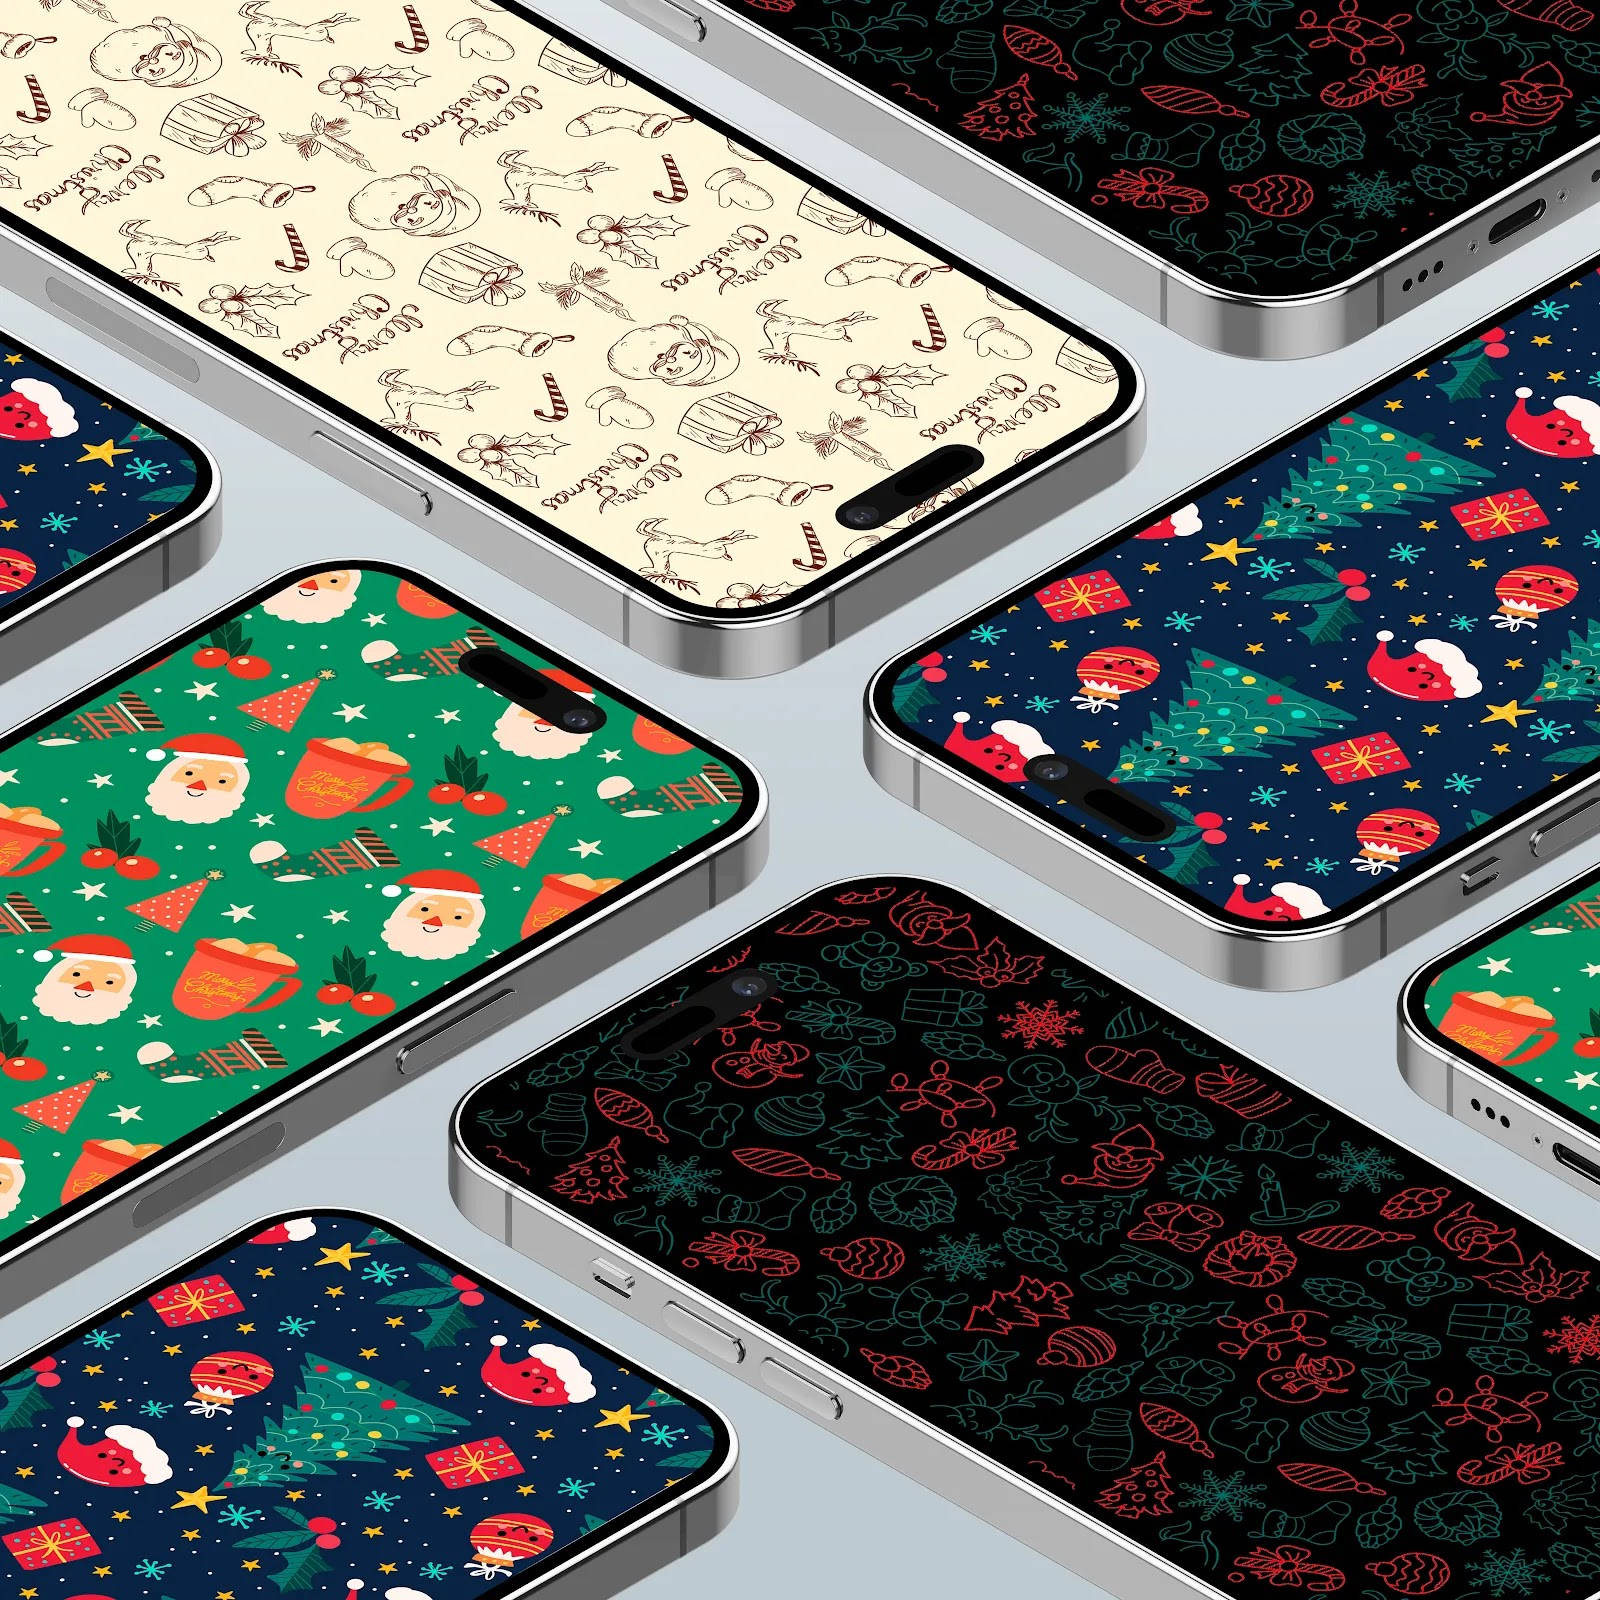 Preppyweihnachts-screen Für Das Iphone Wallpaper